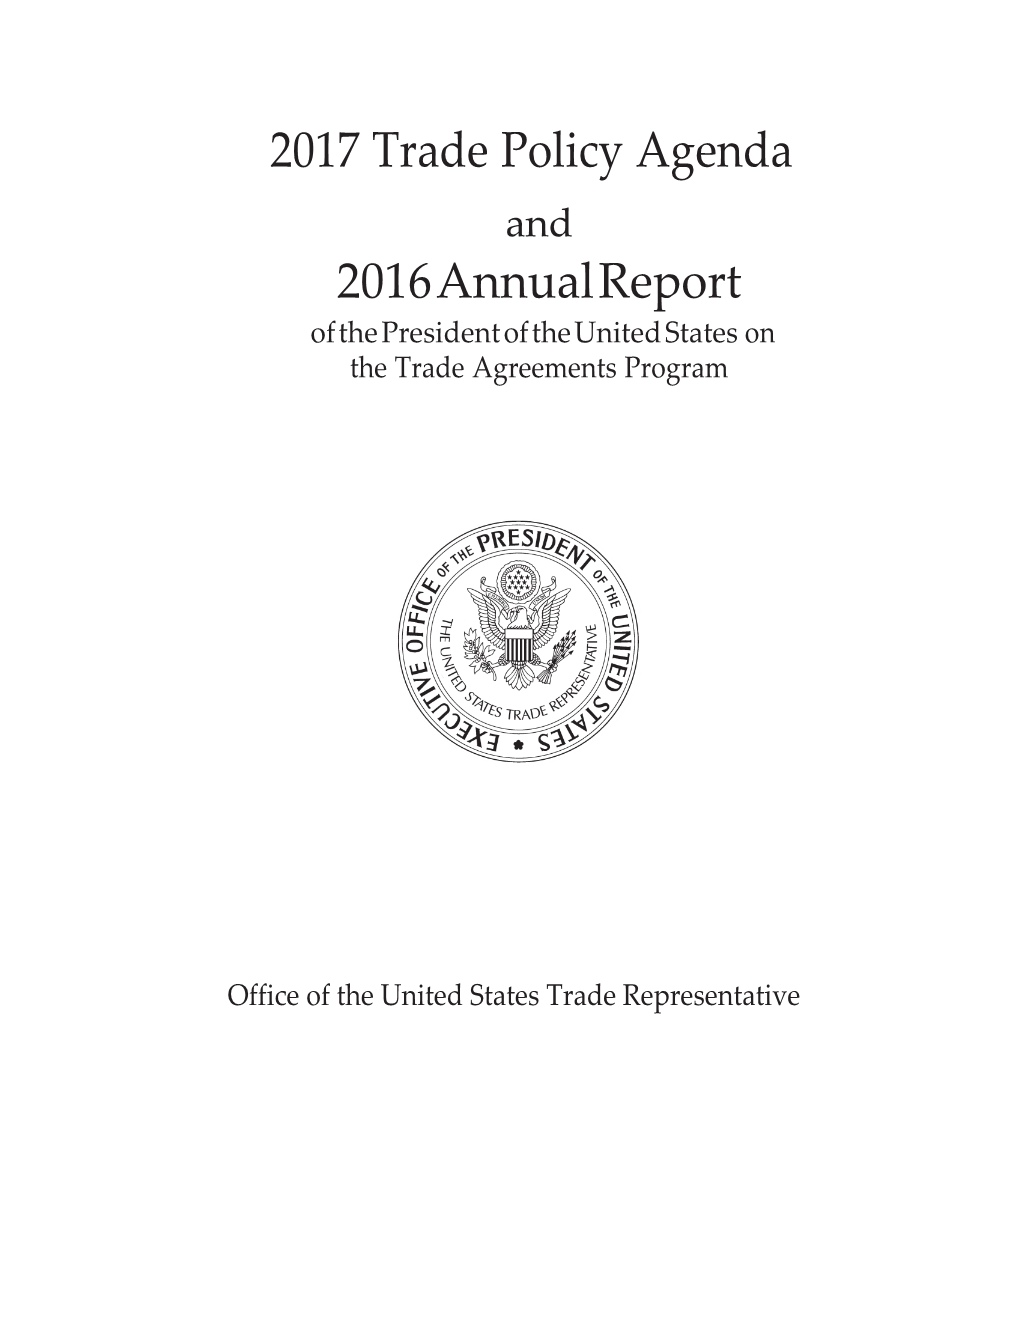 2017 Trade Policy Agenda 2016 Annual Report